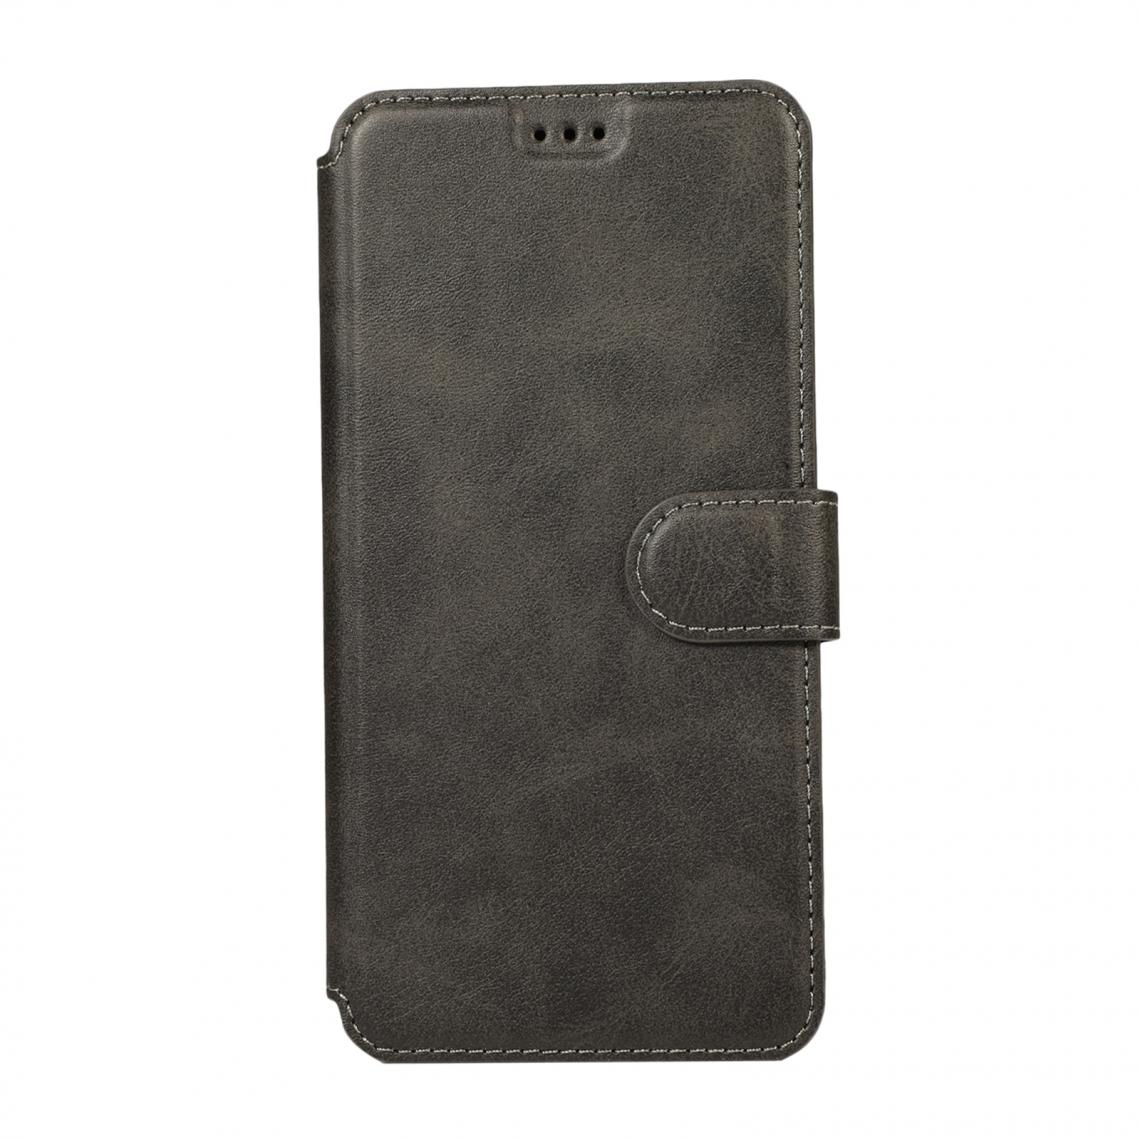 marque generique - Porte-cartes Etui Portefeuille En Cuir Souple Flip Cover Shell Pour IPhone Noir 02 - Coque, étui smartphone